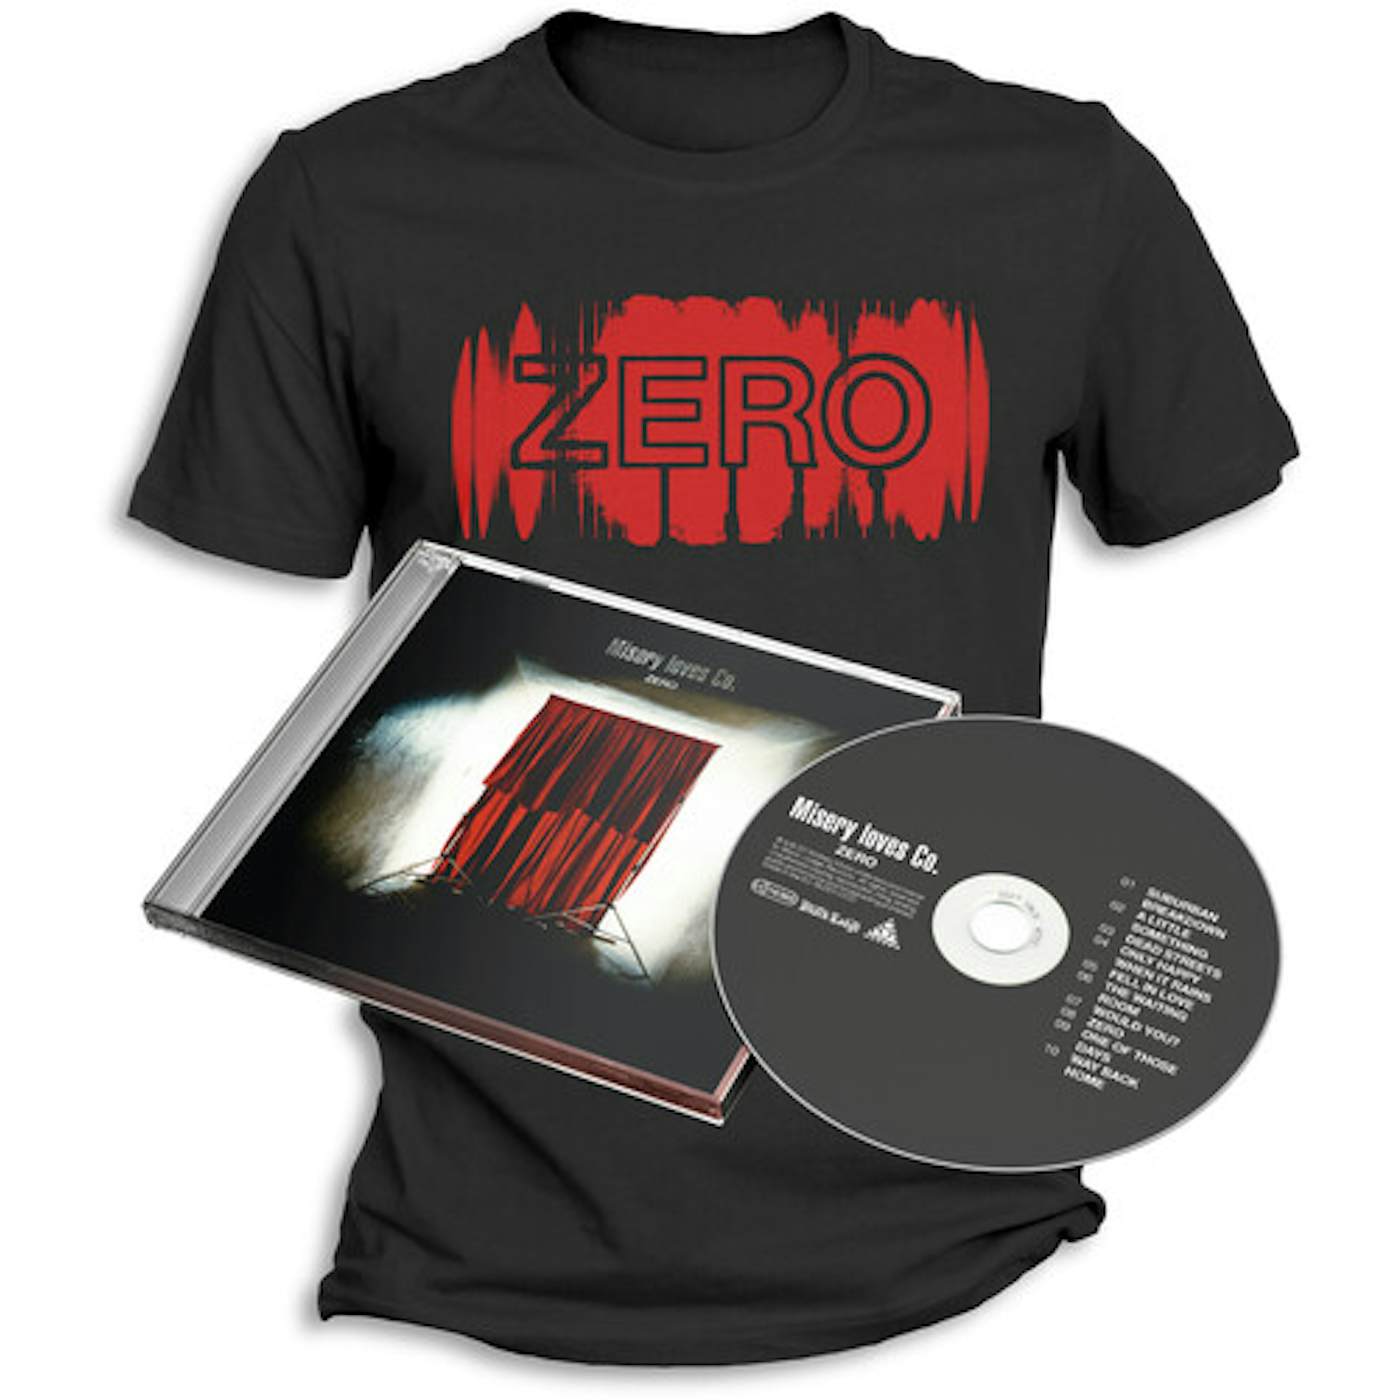 Misery Loves Co. ZERO + T-SHIRT (S) CD